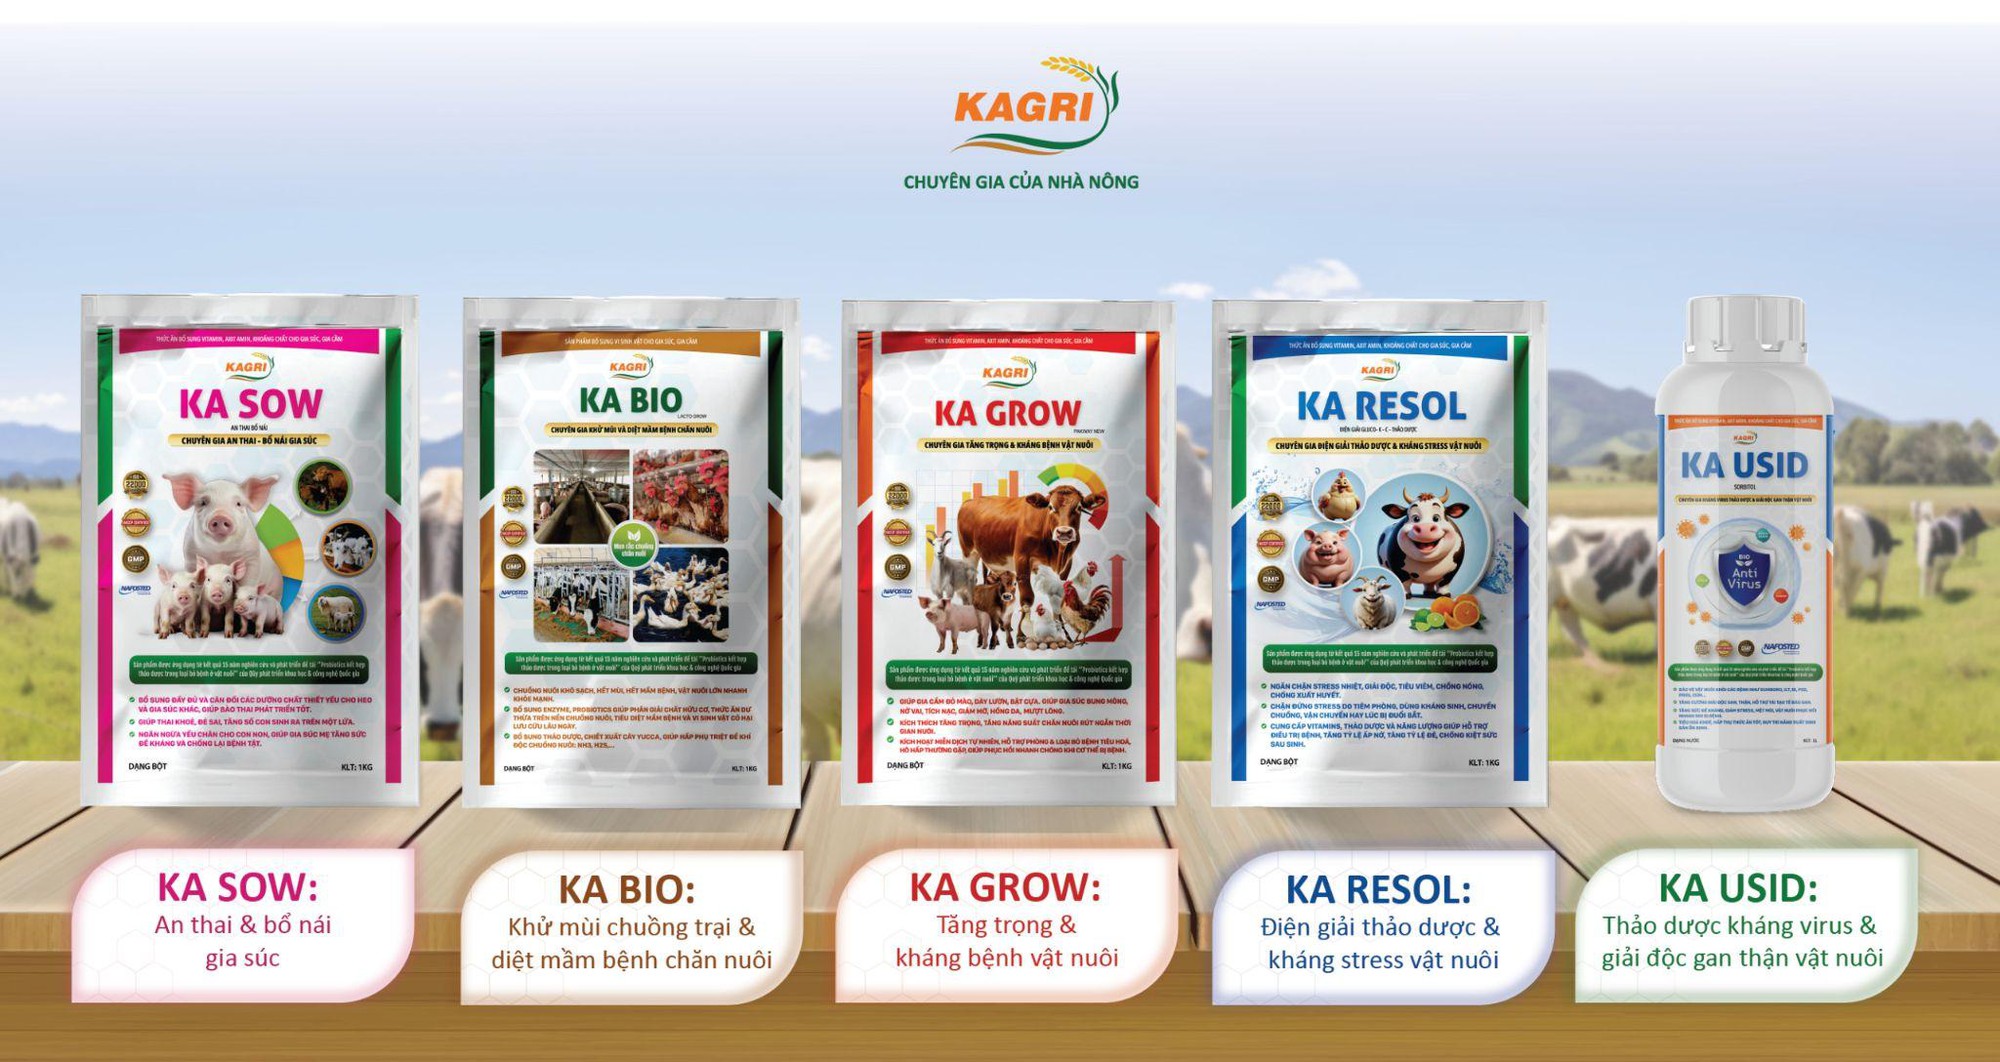 Sản phẩm chăn nuôi sử dụng kháng sinh tự nhiên chinh phục người nông dân Việt Nam- Ảnh 3.